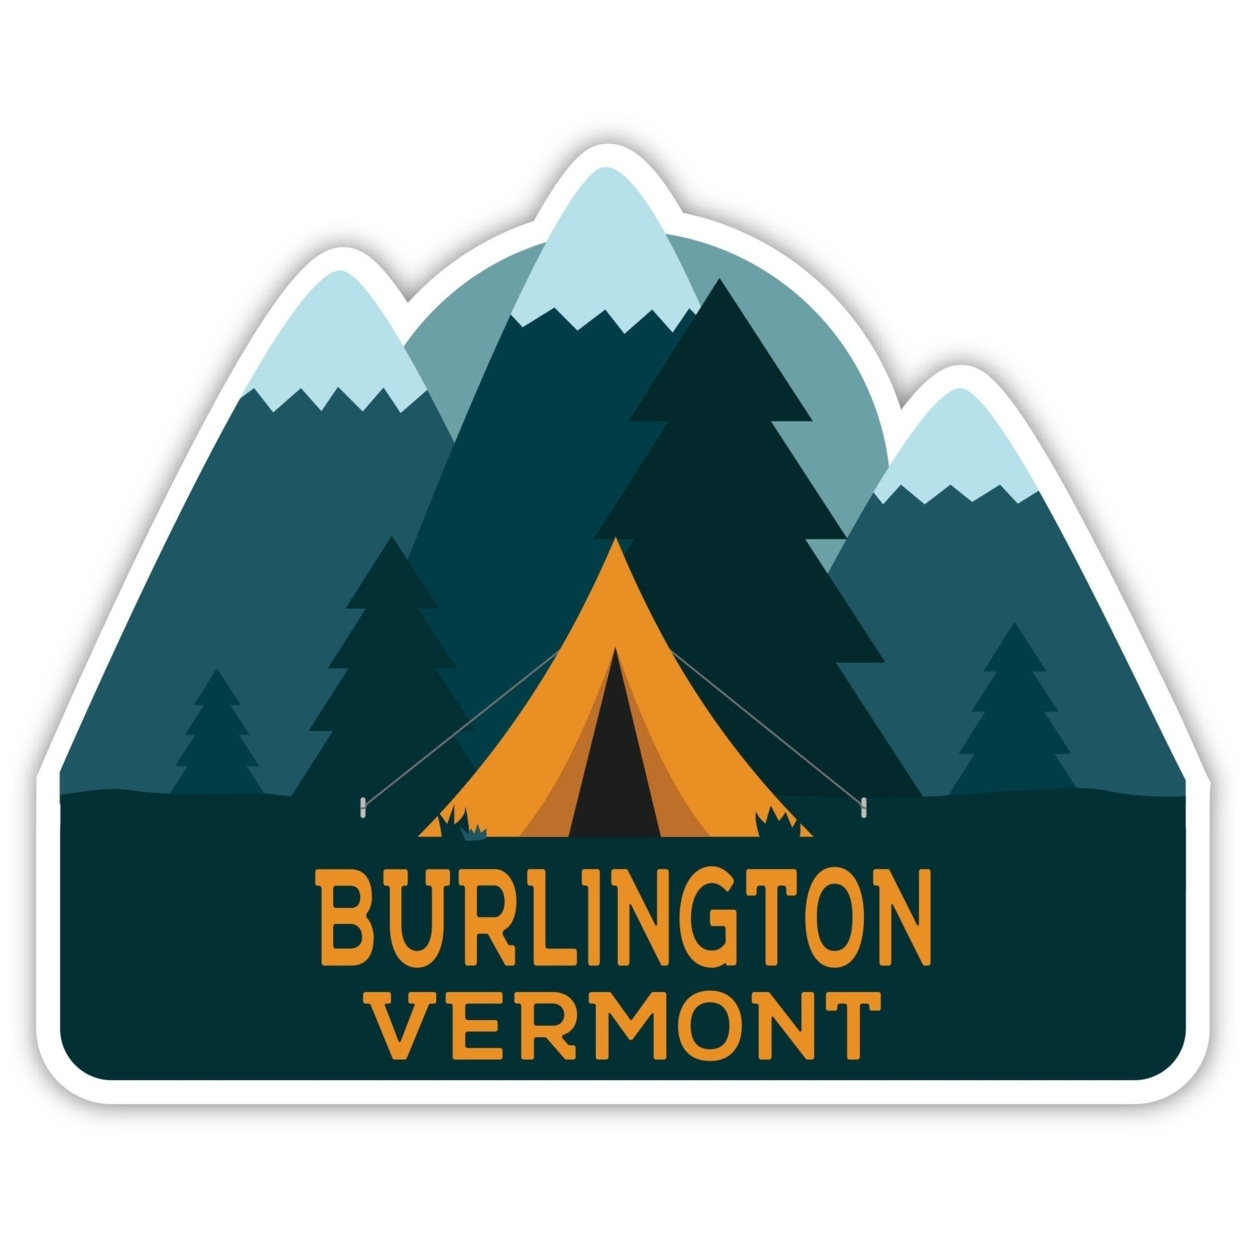 Burlington Vermont Souvenir Decorative Stickers (Choose Theme And Size) - 4-Pack, 8-Inch, Bear